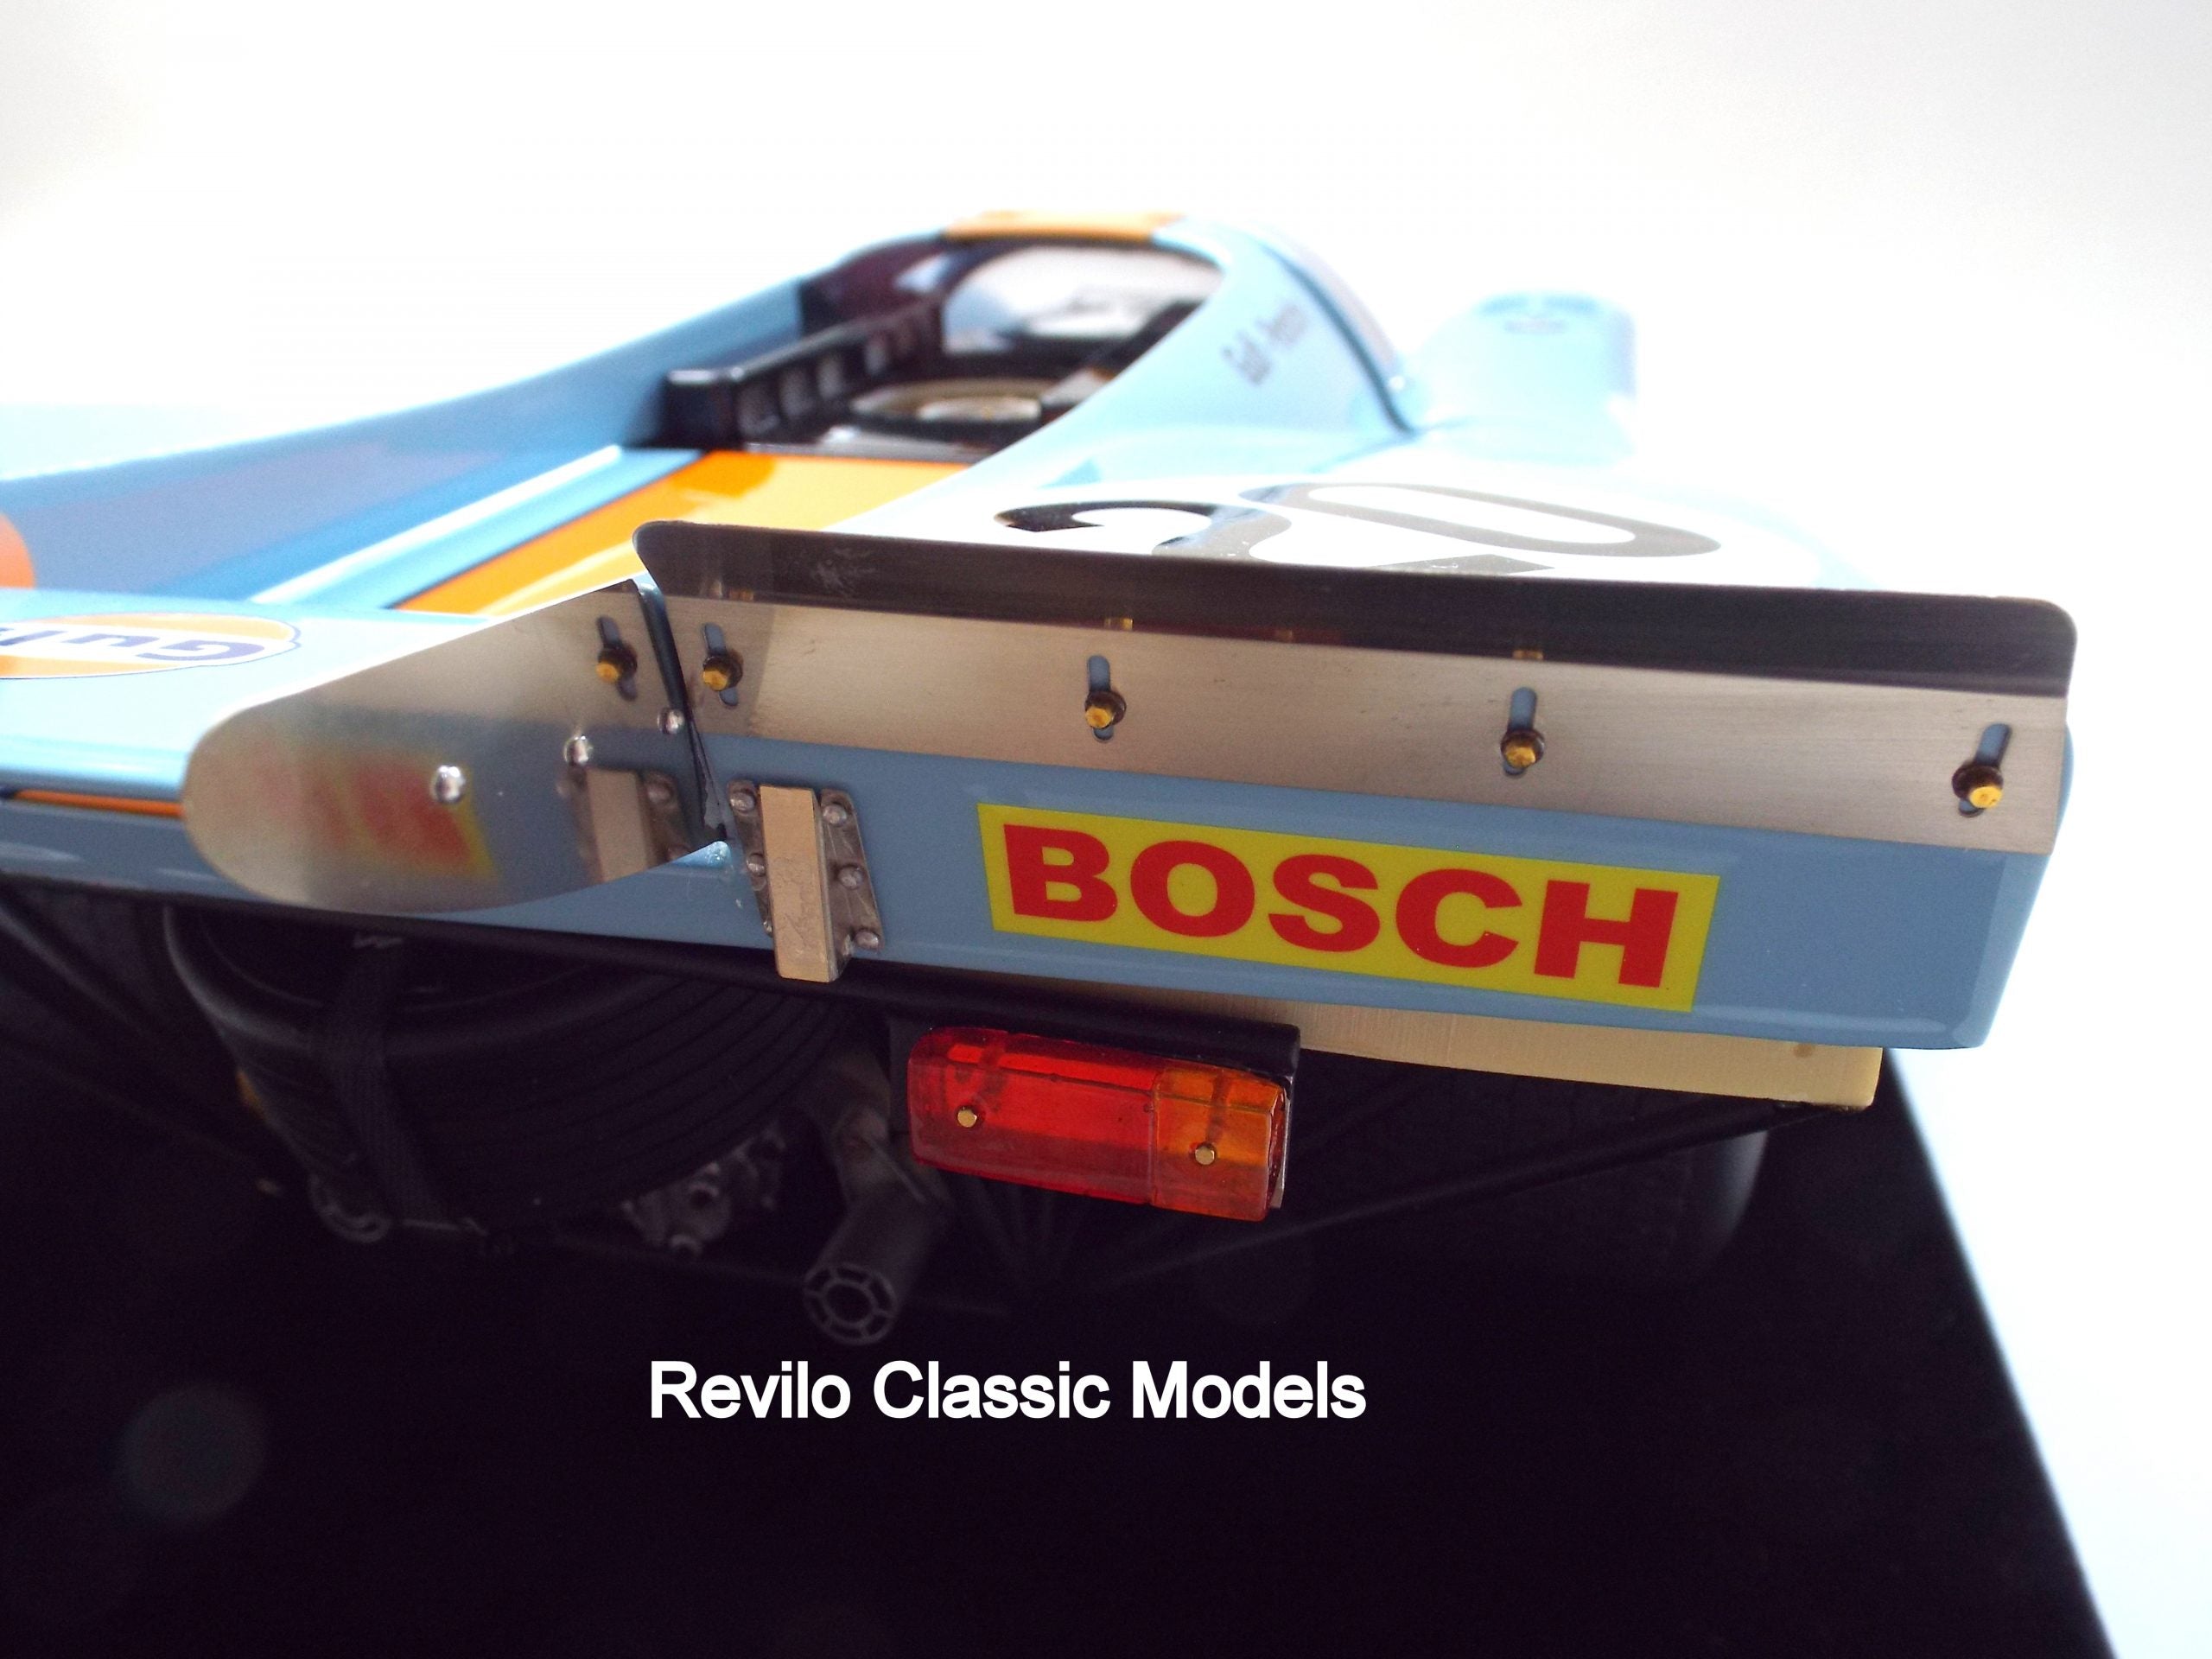 Porsche 917K 1:8 scale by Karsten Schmidt